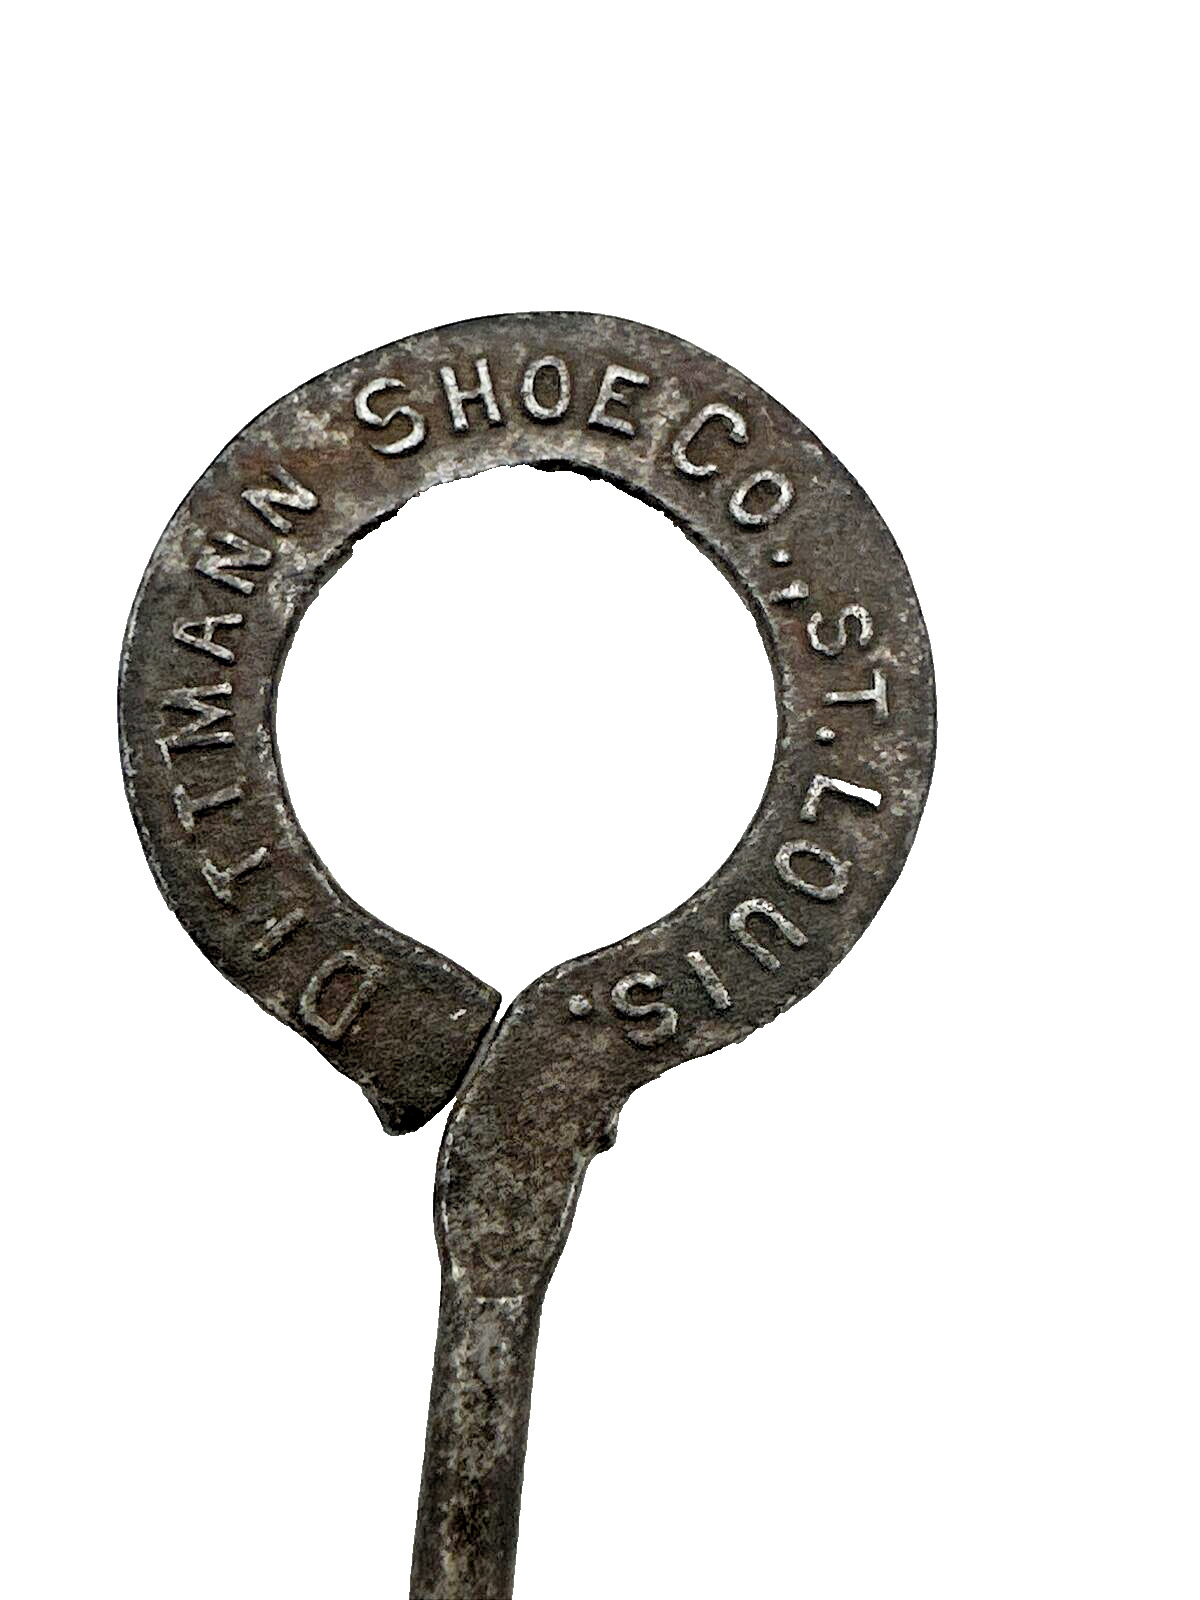 Antique Dittman Shoe Company of St. Louis Shoe Button Hook, 1840\'s-1920 Missouri